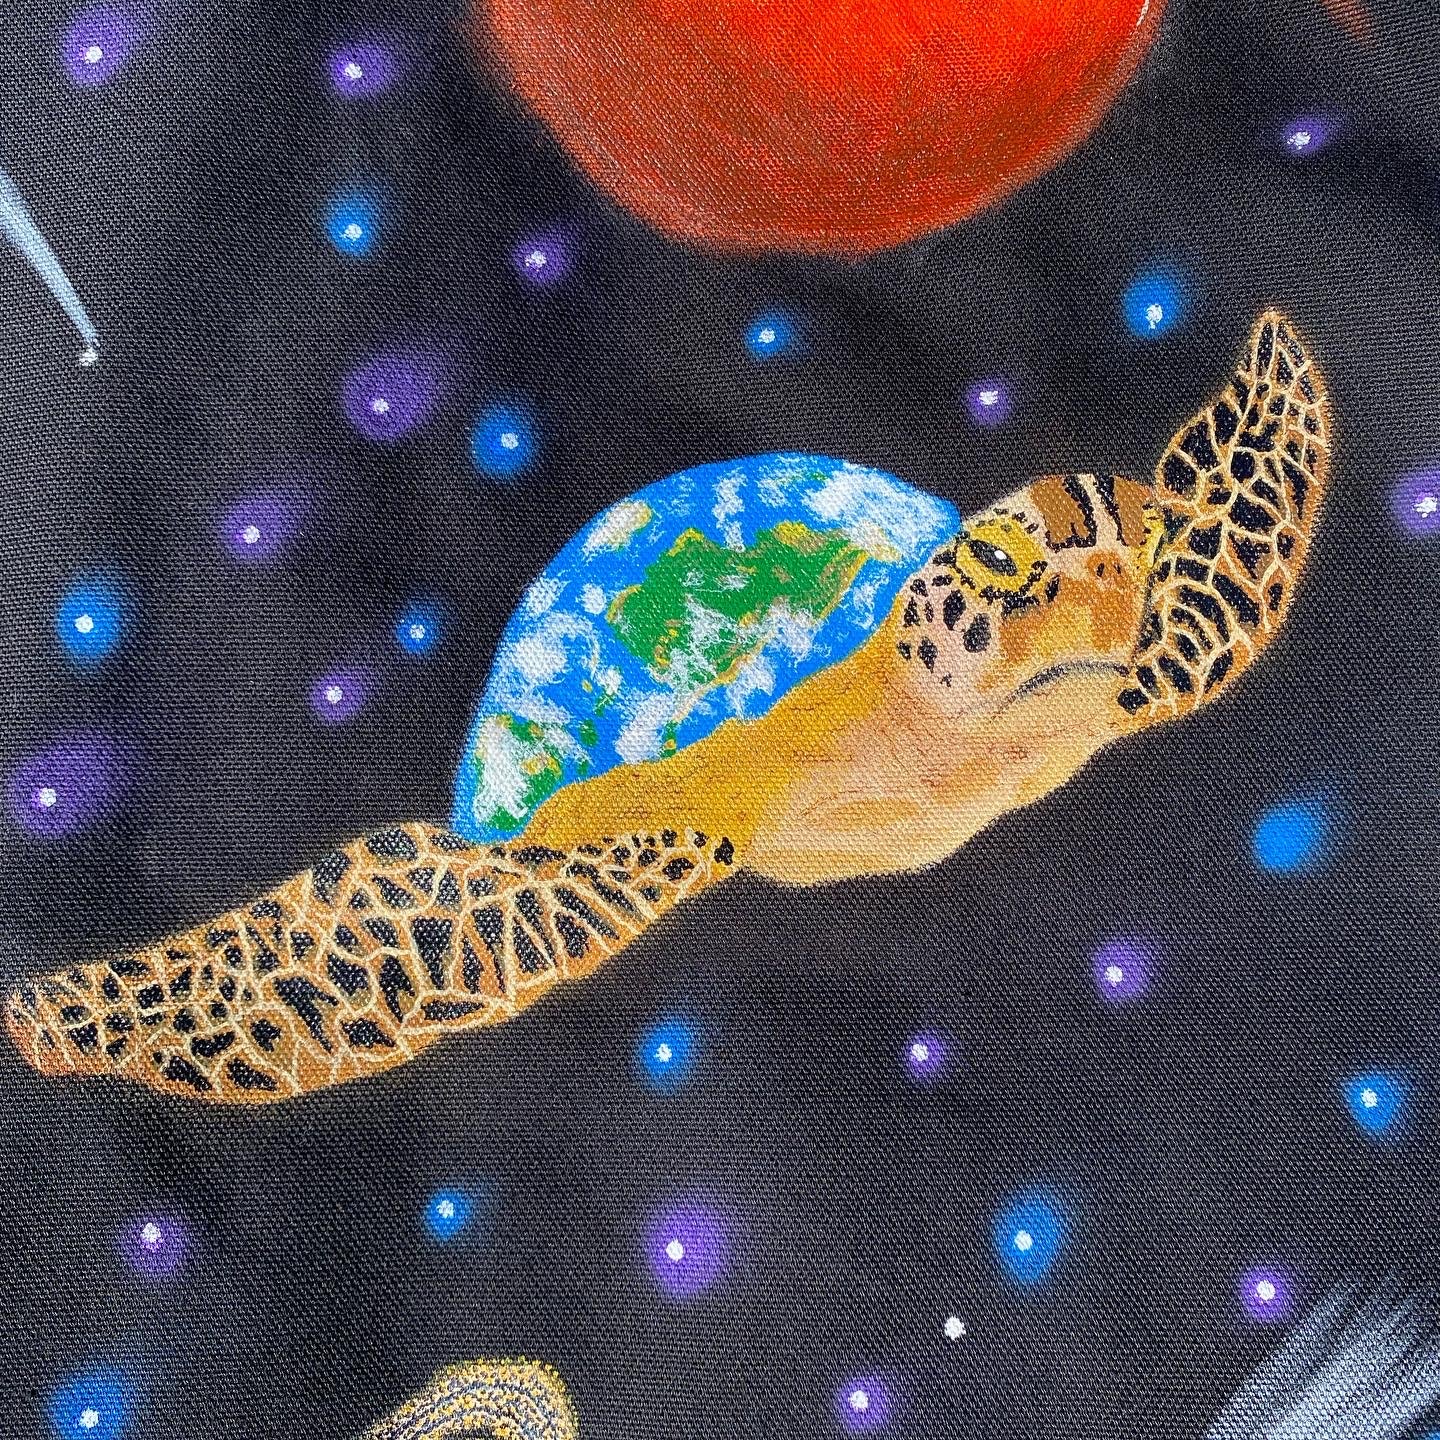 Cosmic turtle